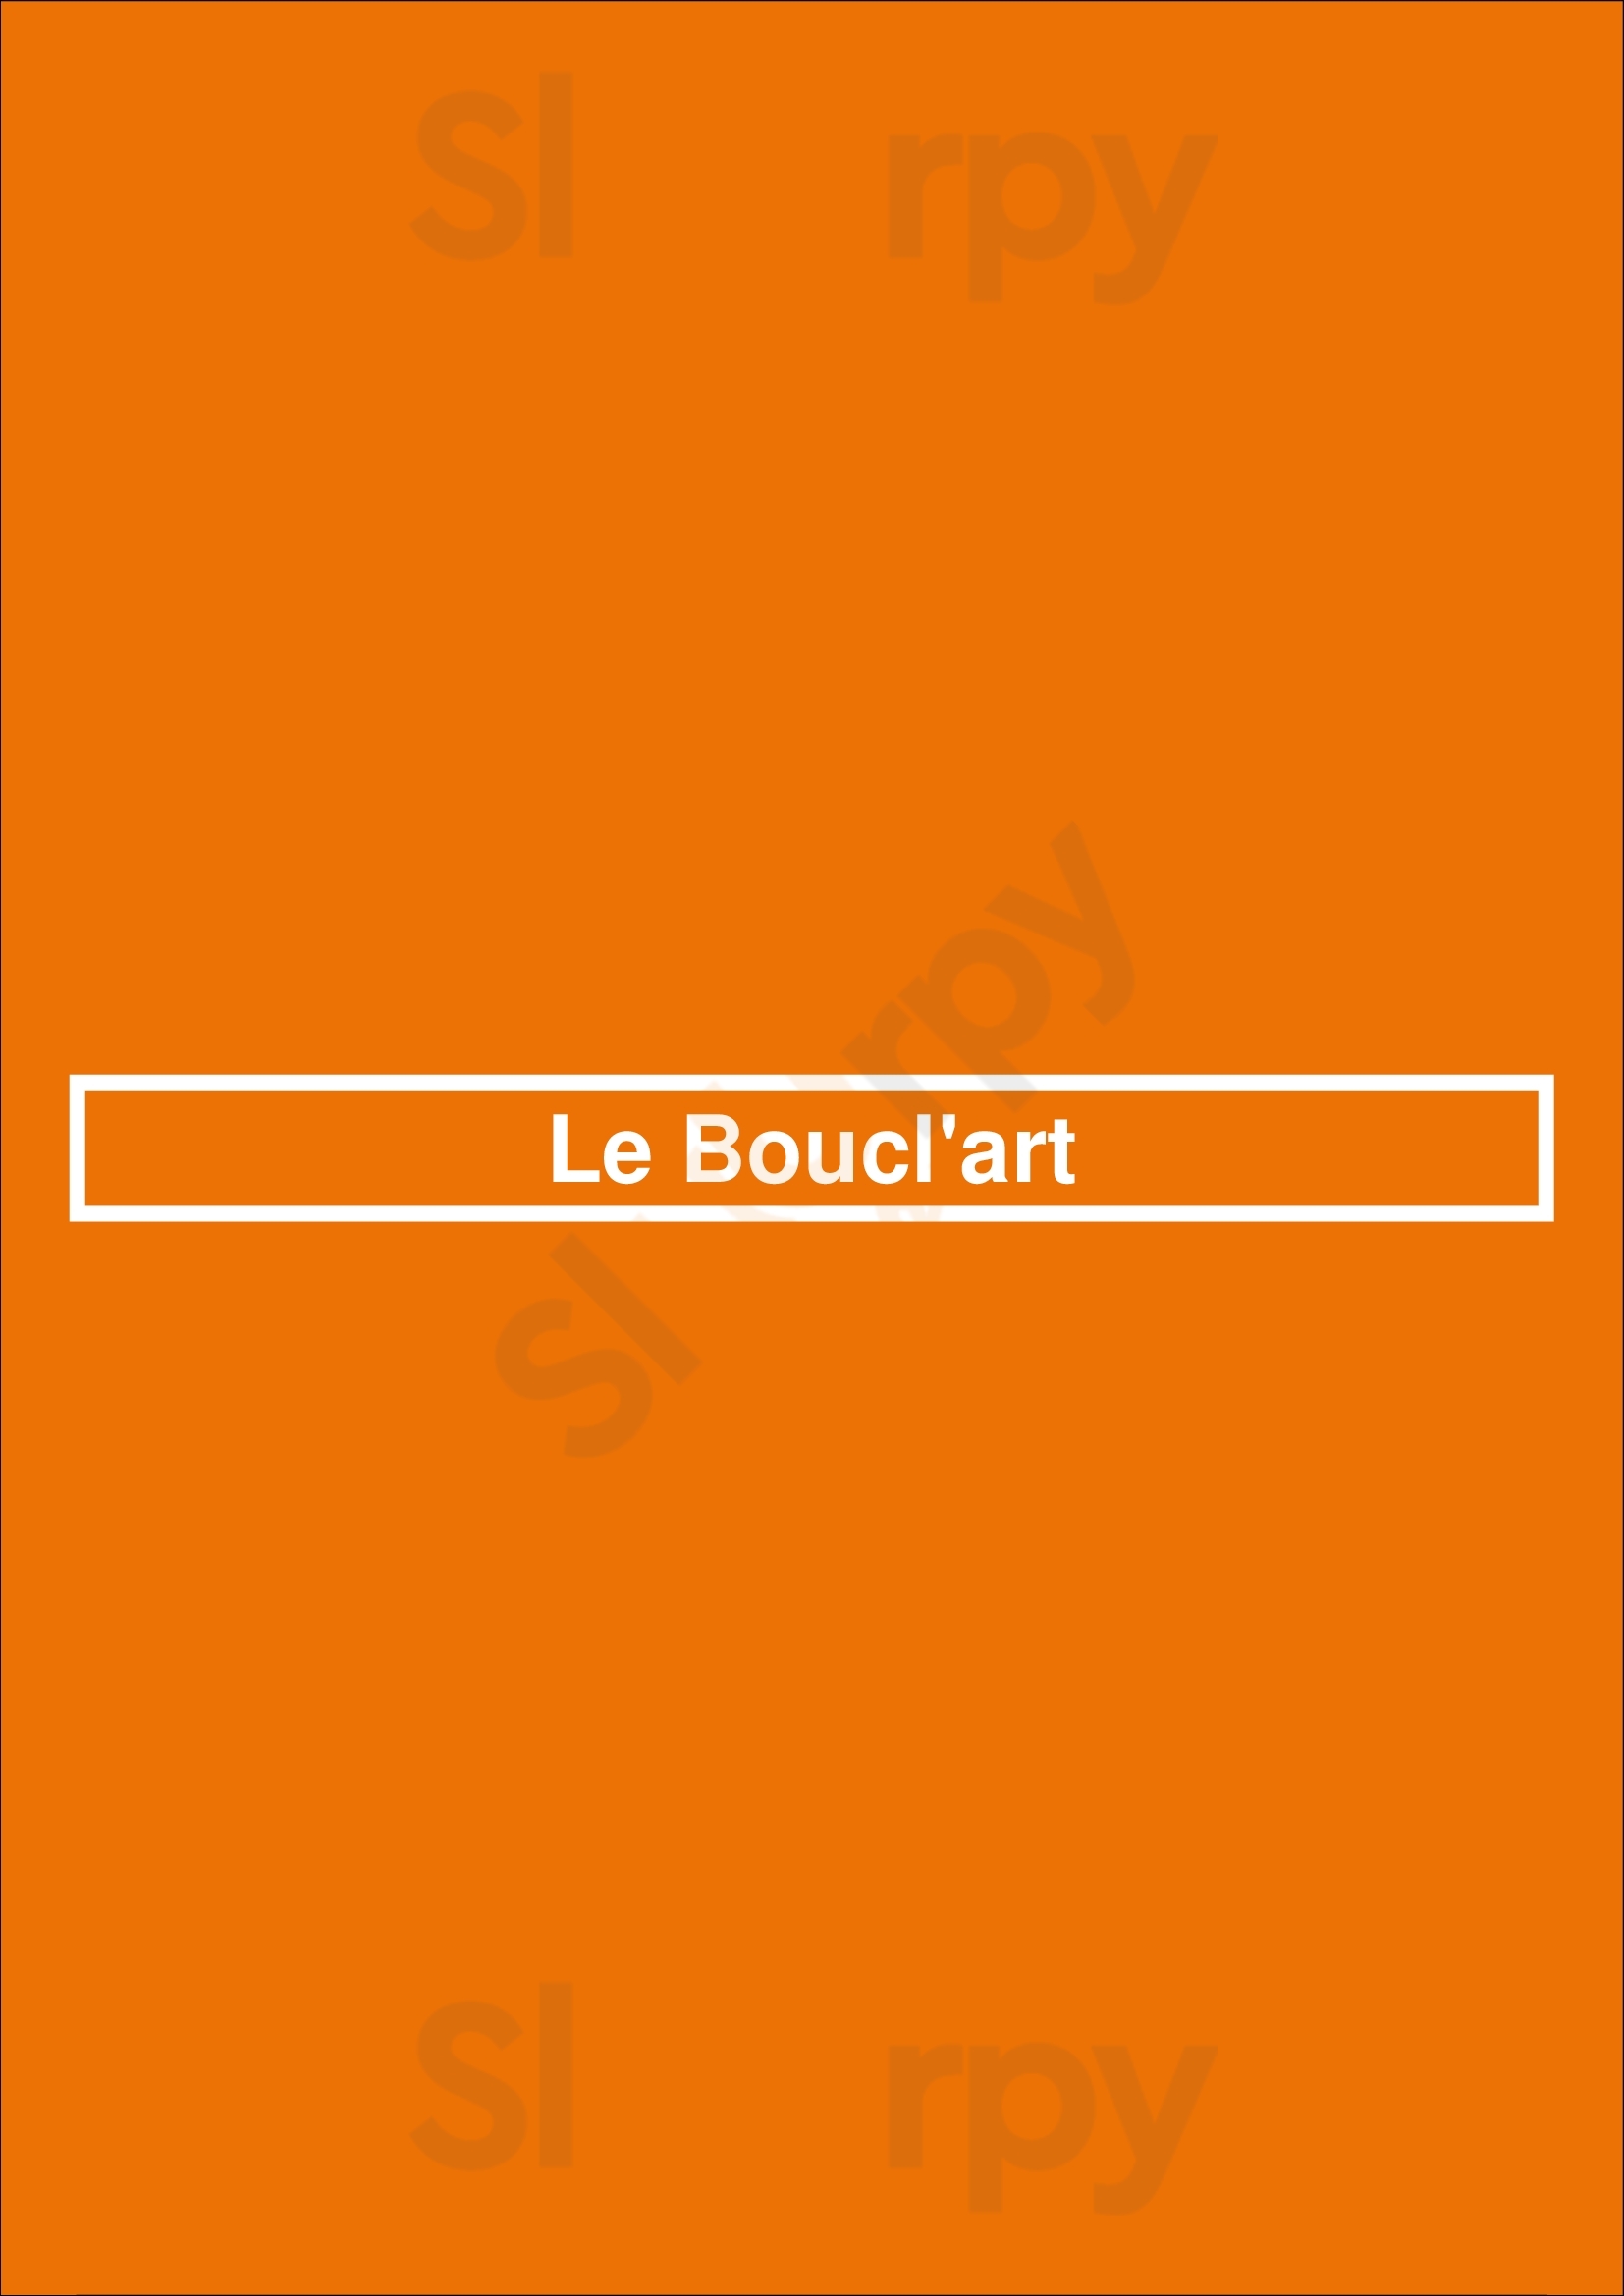 Le Boucl'art Paris Menu - 1